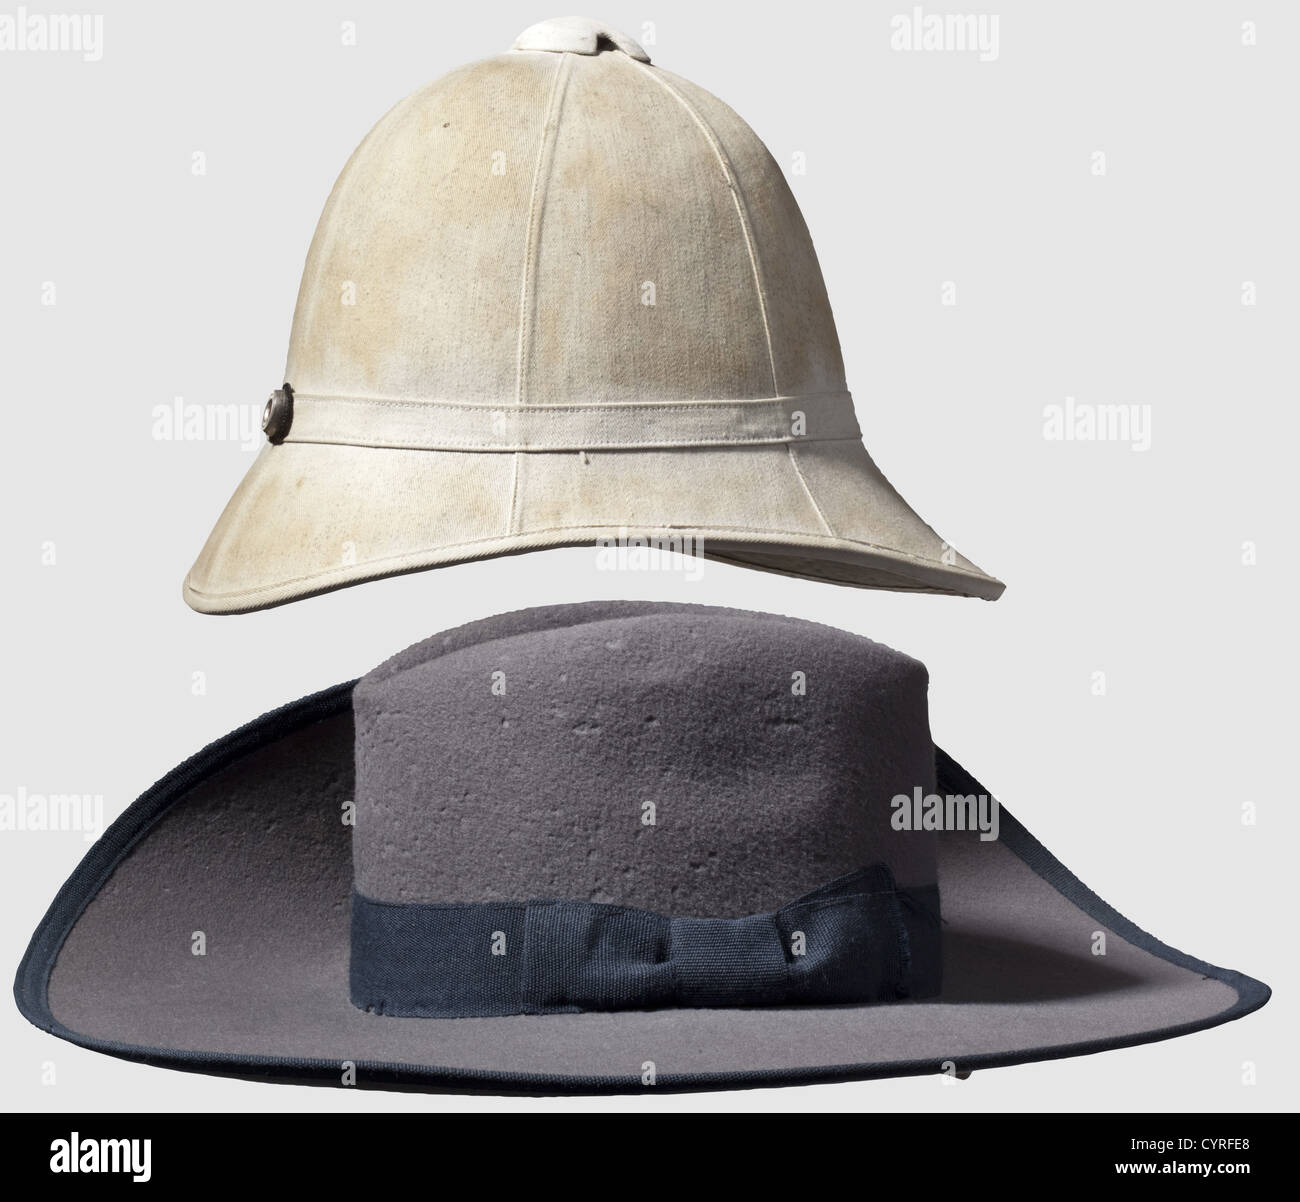 Tenuta di un ufficiale di Schutztruppen, Africa sudoccidentale tedesca,  Camerun 1908 cappello per un membro del DSW Schutztruppe (forze di difesa).  Feltro di lana grigio, fascia di cappello blu e bordo di